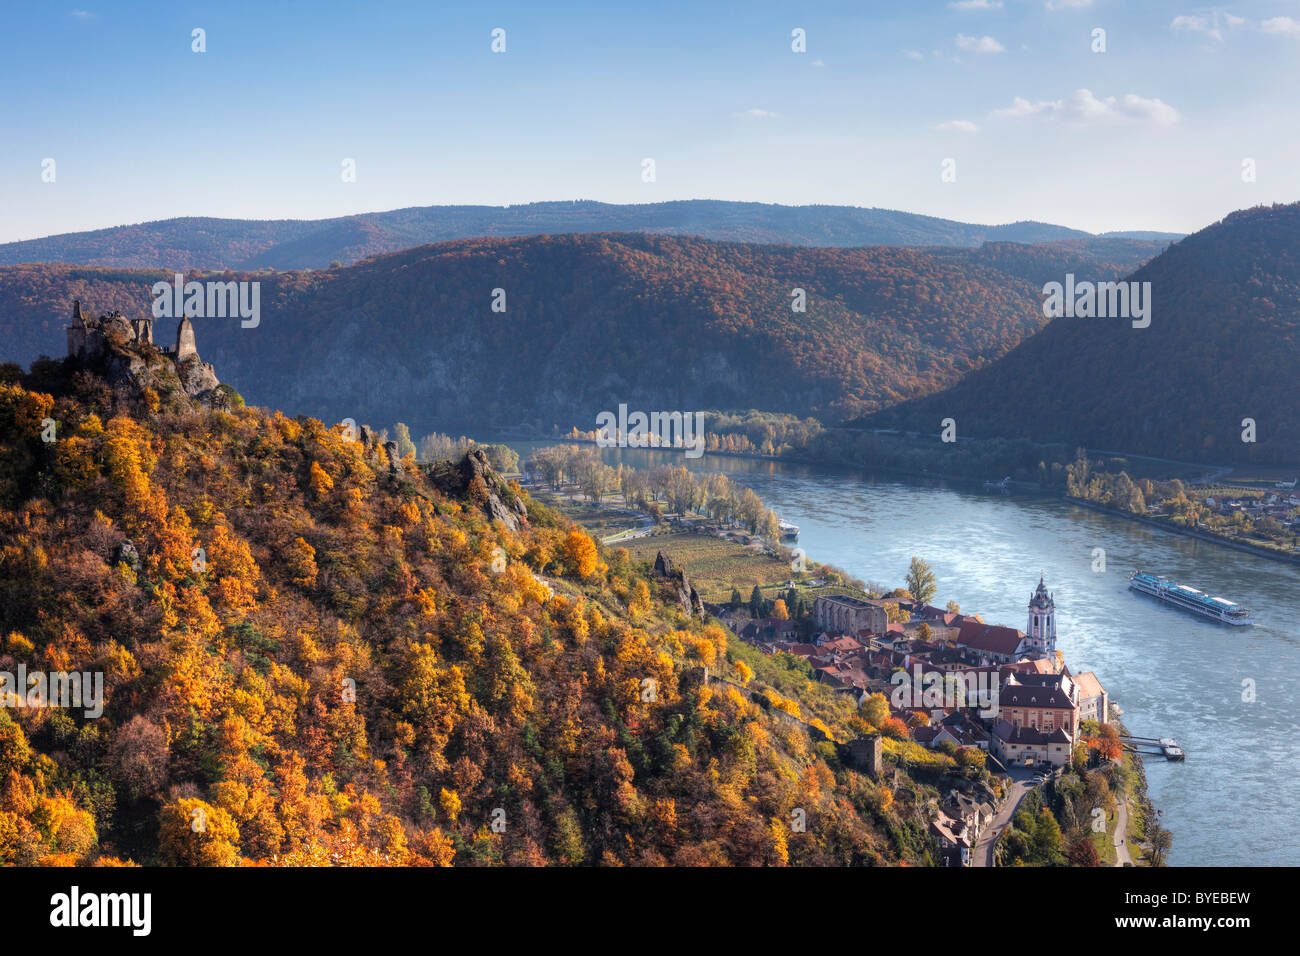 Castle ruins and town of Duernstein, Danube, Wachau valley, Waldviertel region, Lower Austria, Europe Stock Photo